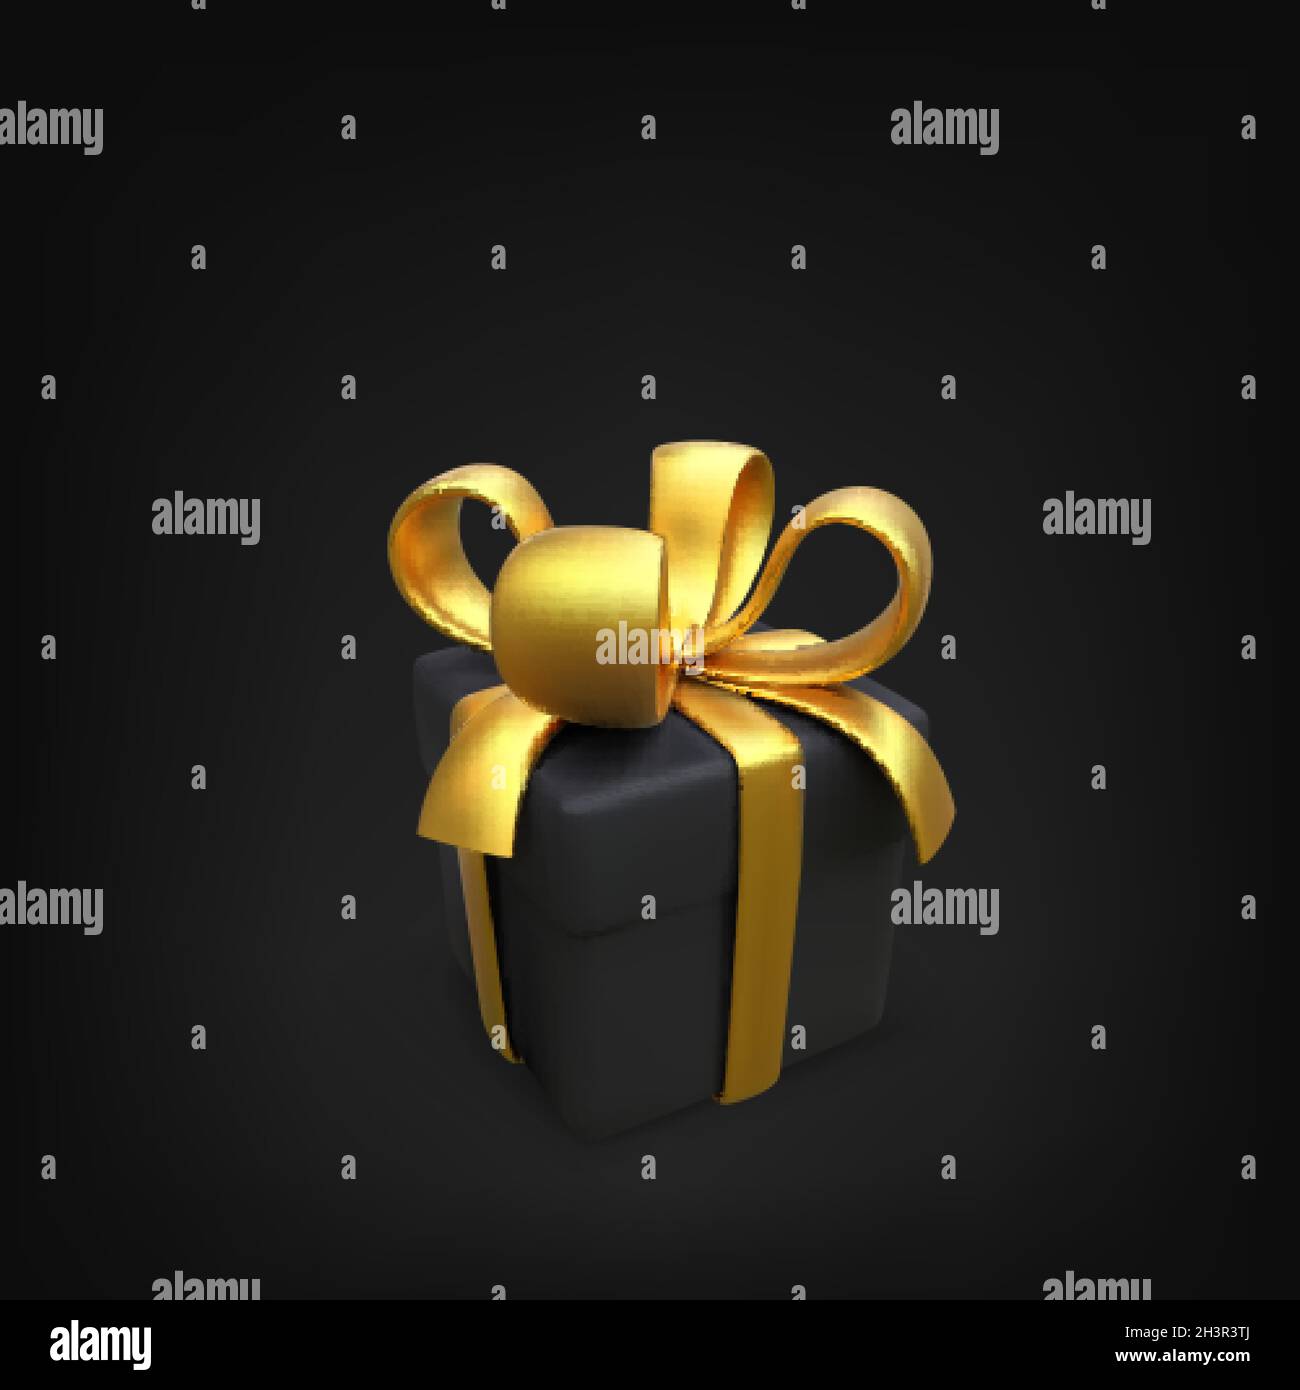 Schwarze Geschenkbox mit Goldband in realistischem Stil. 3D-Box mit goldener Schleife. Black friday Design-Element. Überraschungspaket für den Urlaub. Vektorgrafik Stock Vektor